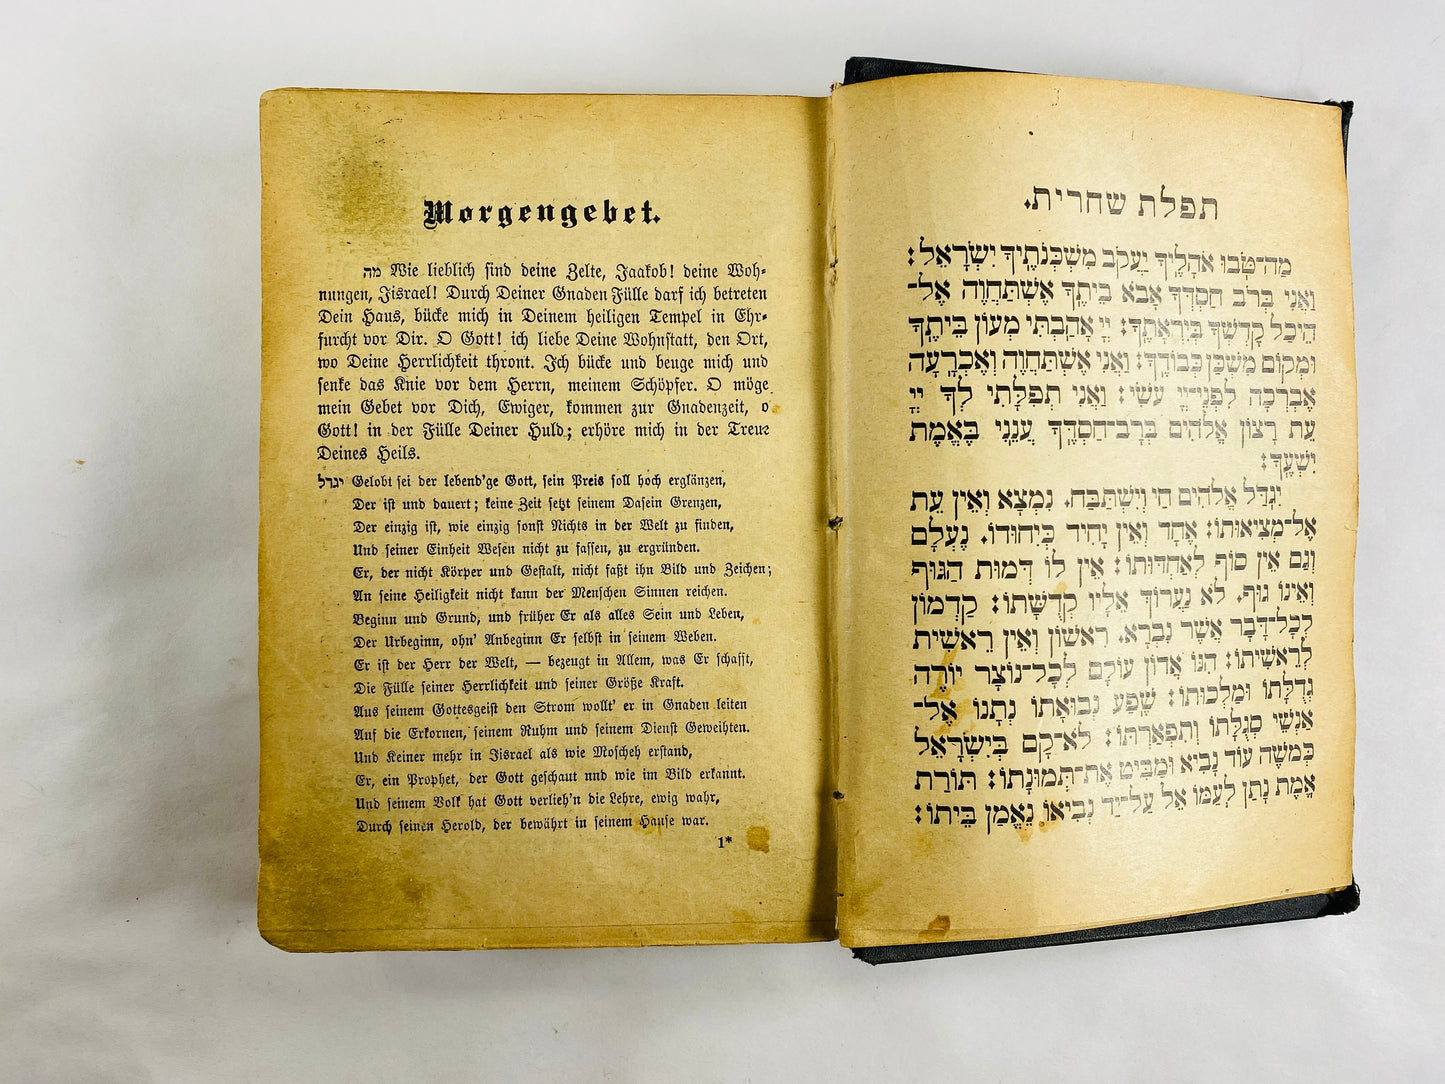 1919 Antique Festival prayers of the Israelites vintage Machsor book written in German Michael Sachs Festgebete der Israeliten